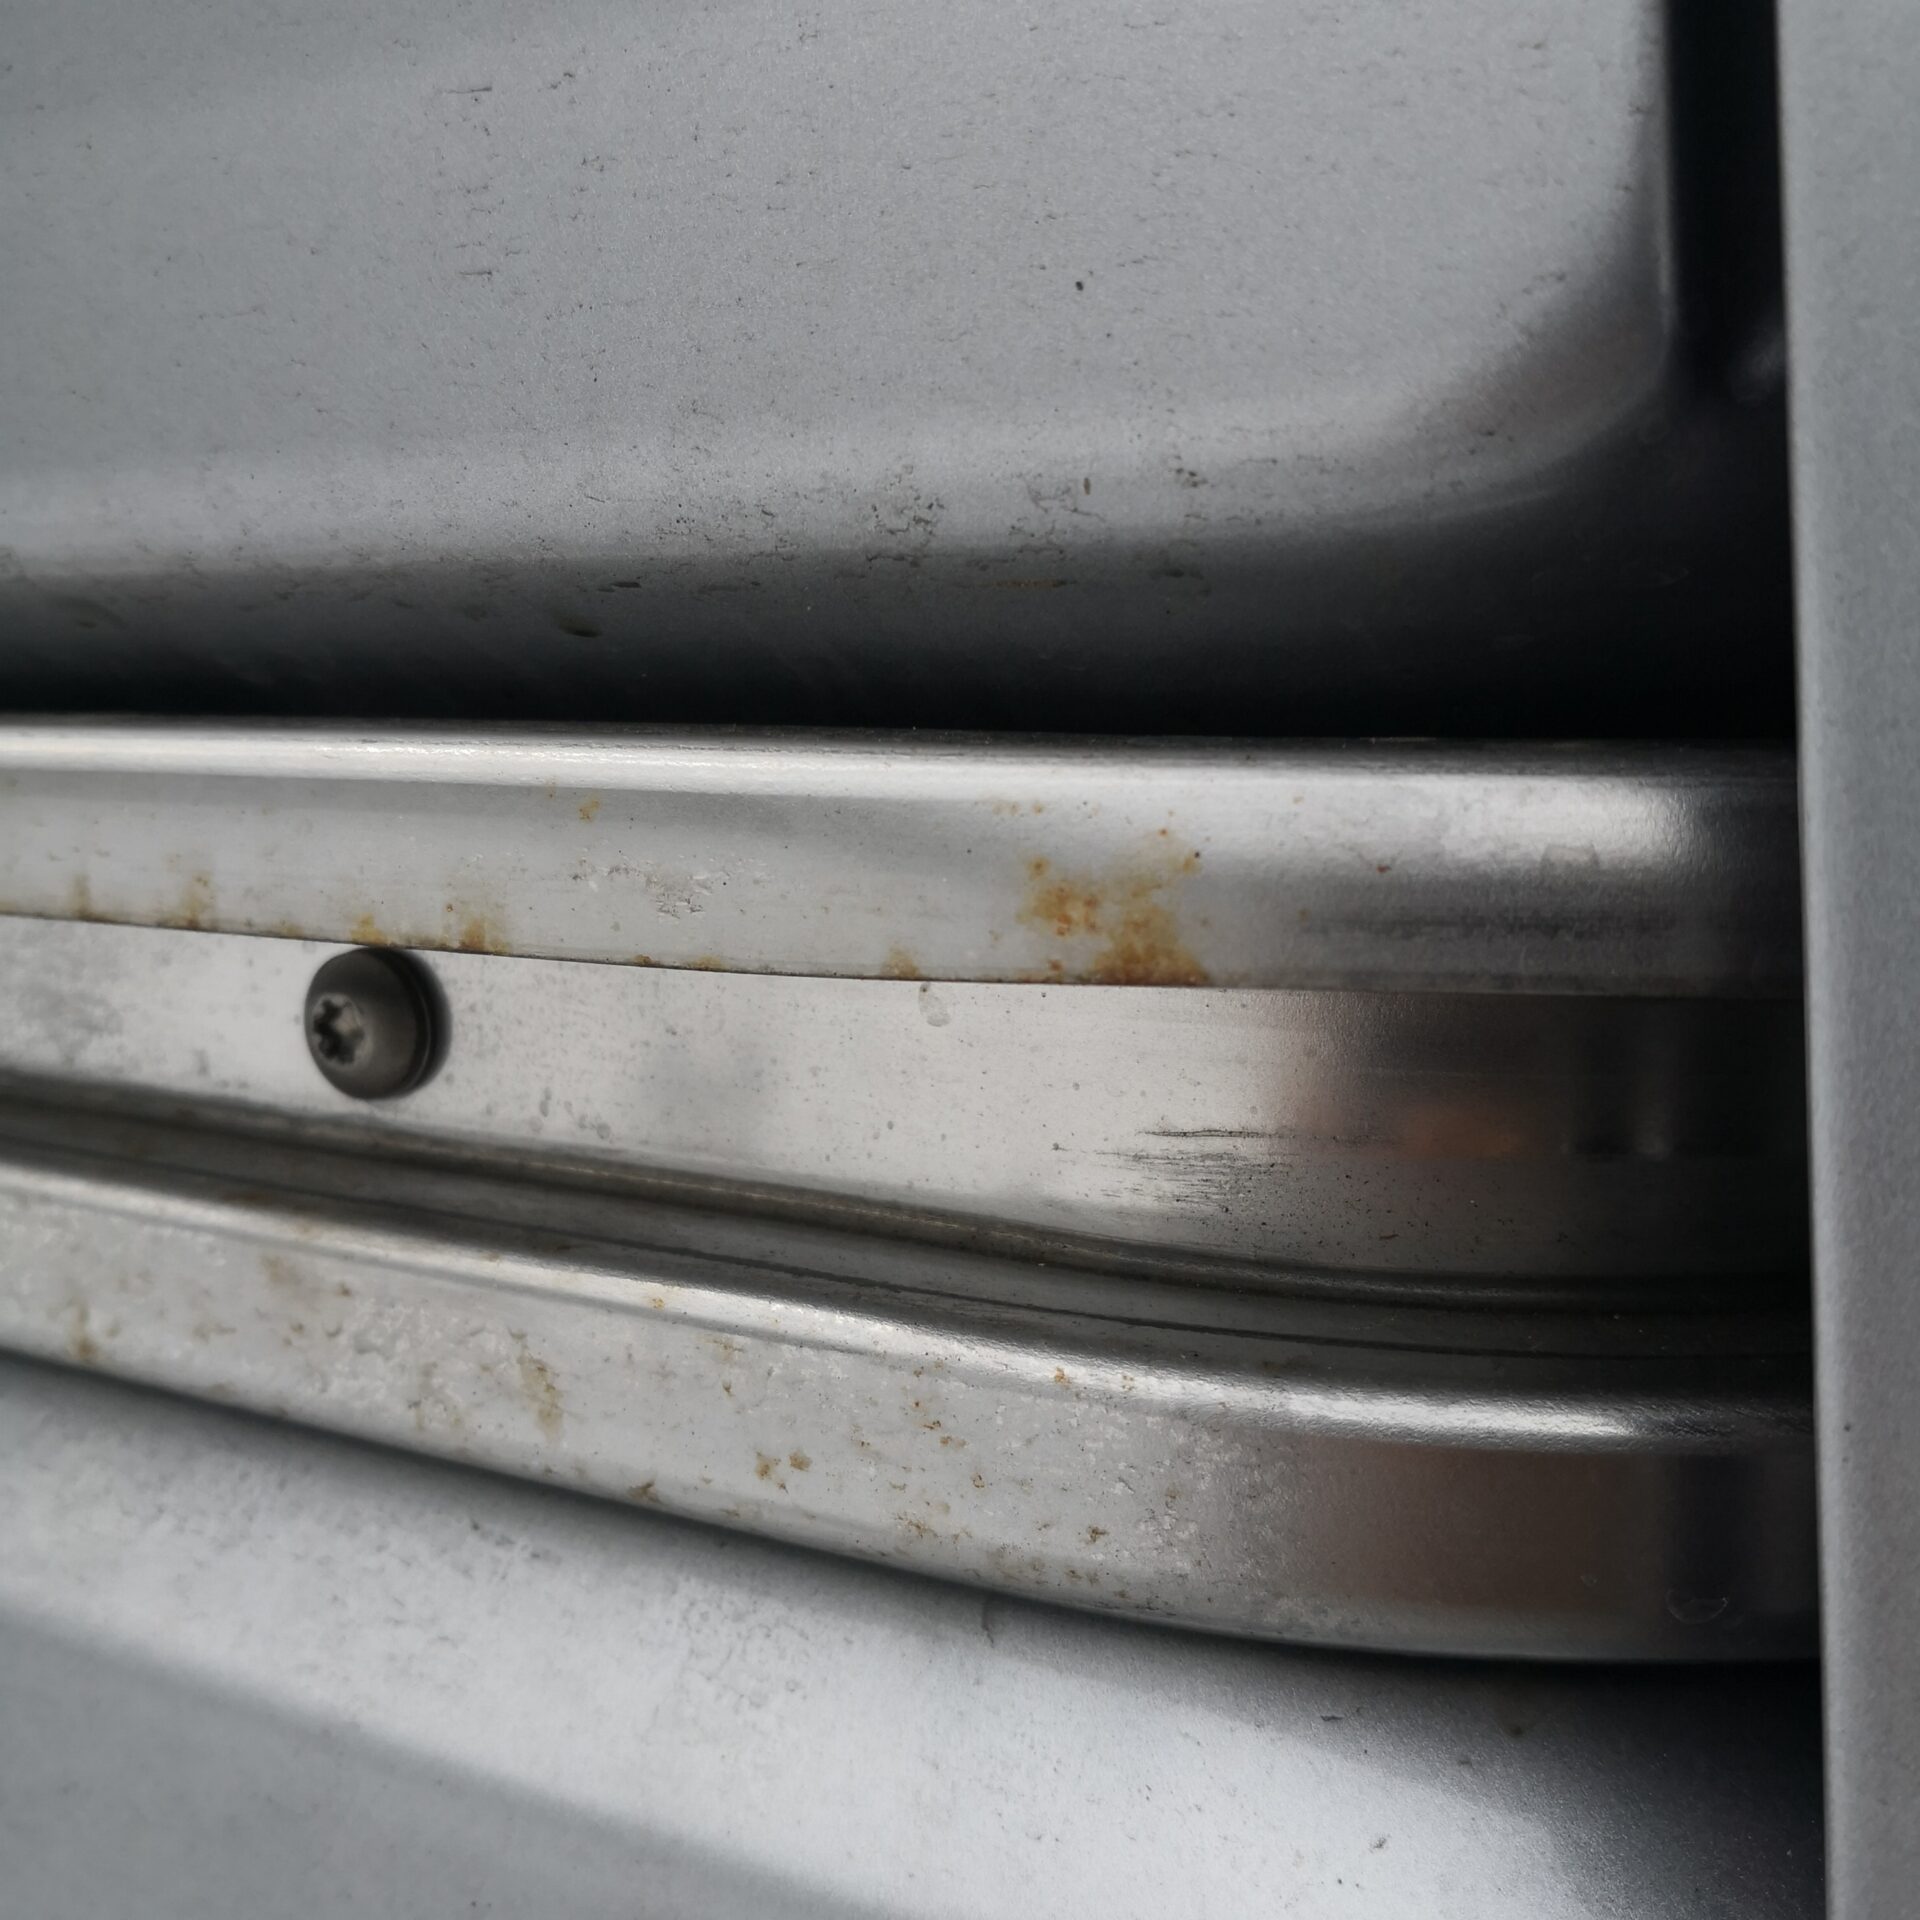 ホンダn Van納車から2ヶ月でスライドレールに錆が発生 ホンダの見解は Outdoor Info